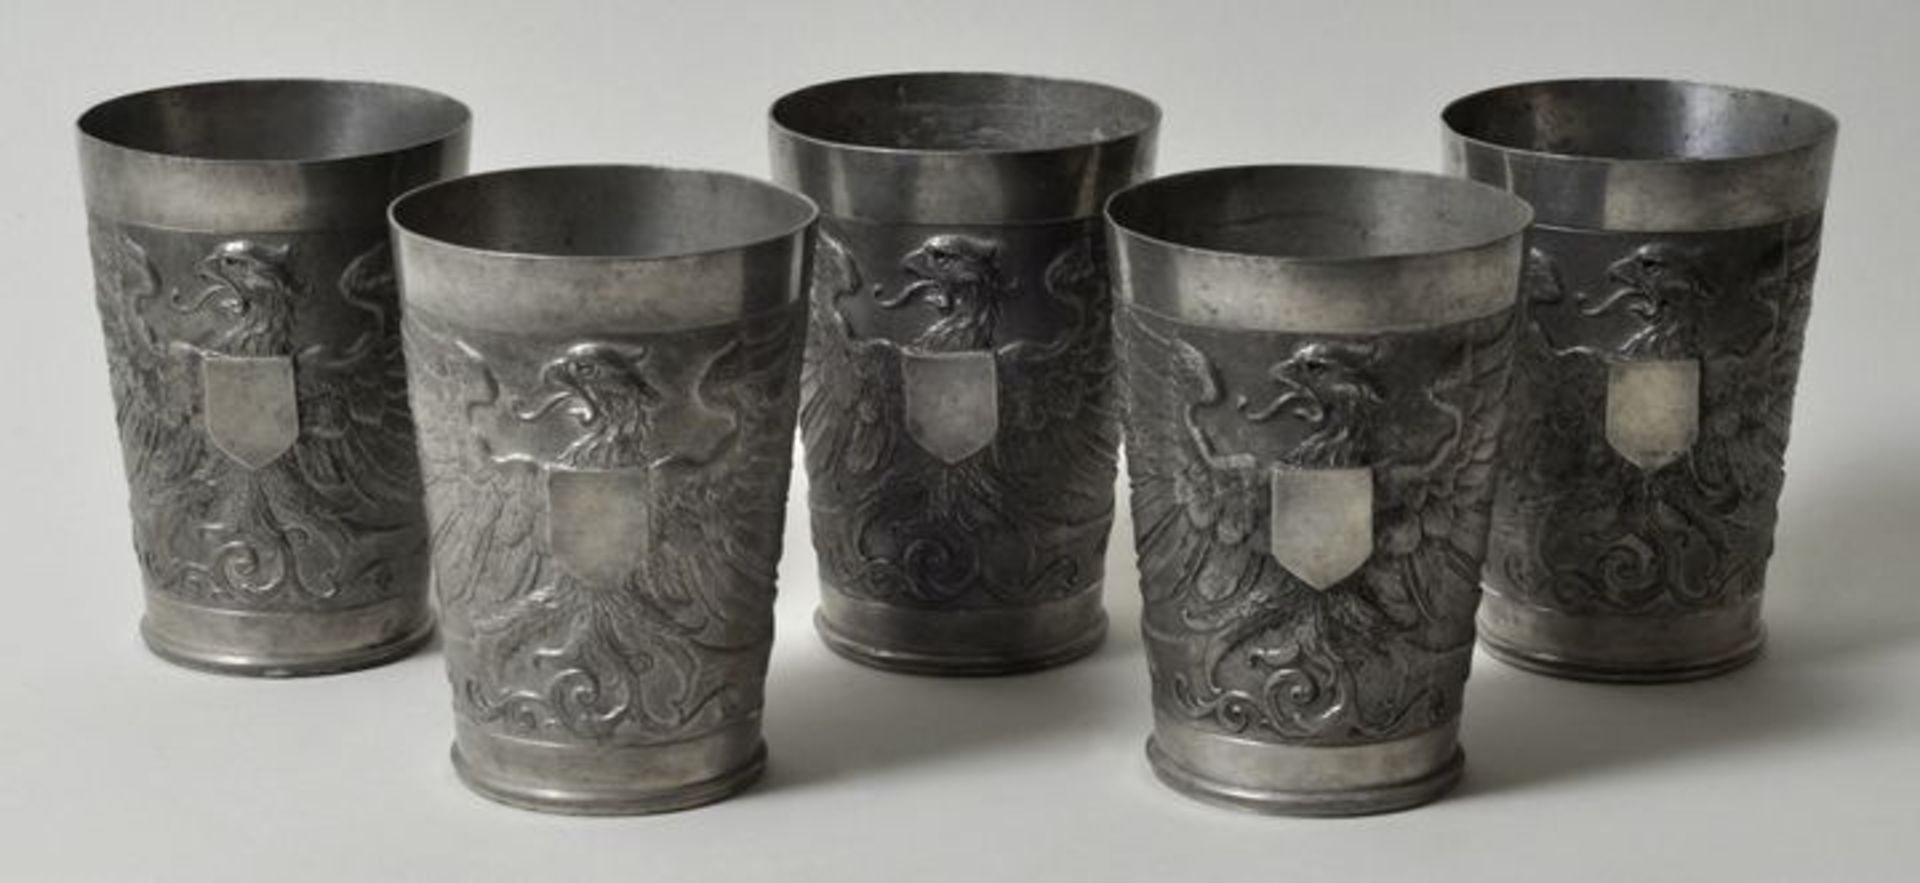 Fünf Becher, um 1890Zinn. Die konische Wandung reliefiert mit heraldischem Adler und vakanter